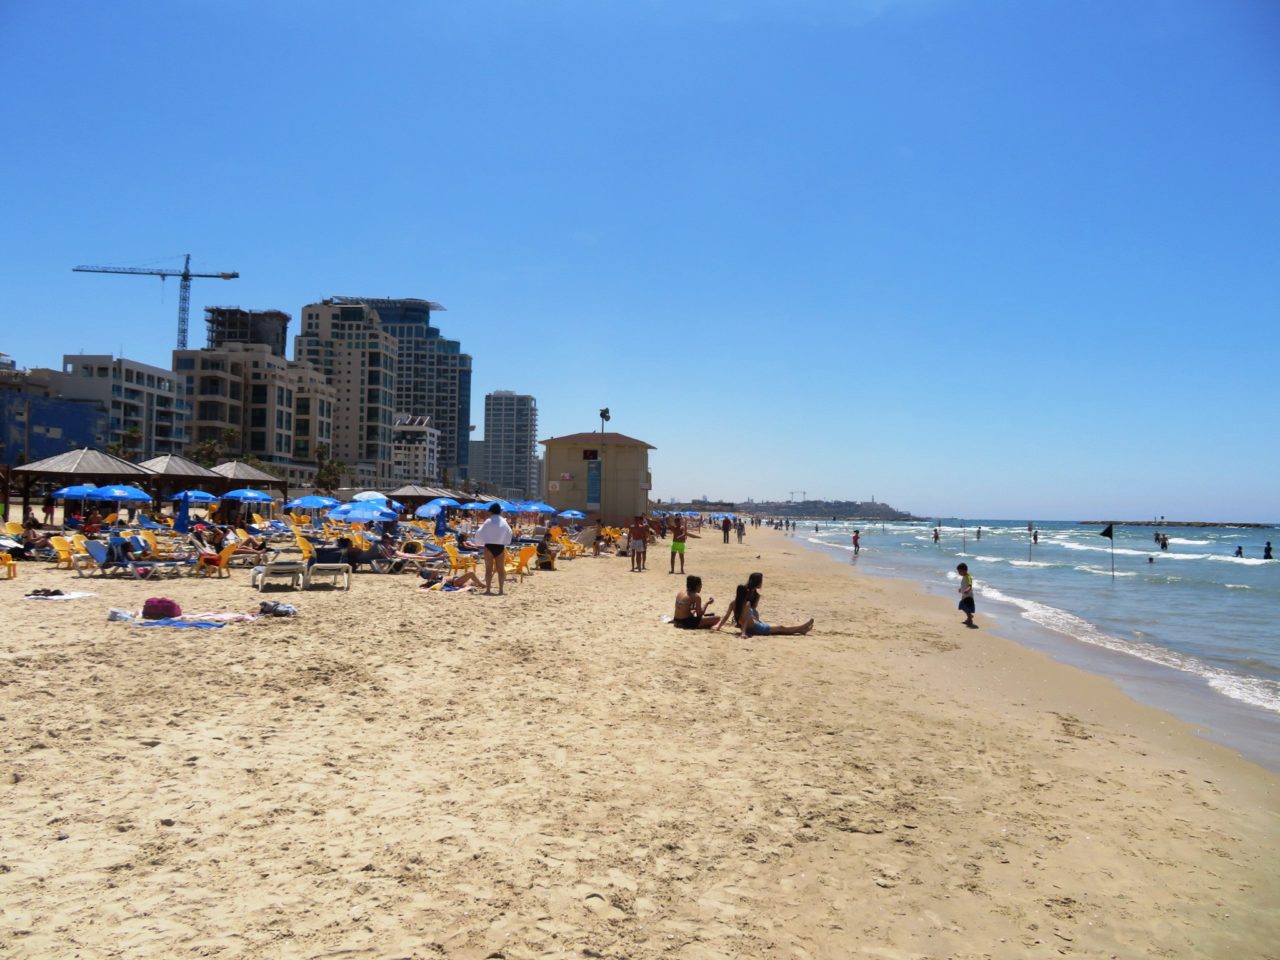 Vacationing in Israel ... The Tel Aviv Beach